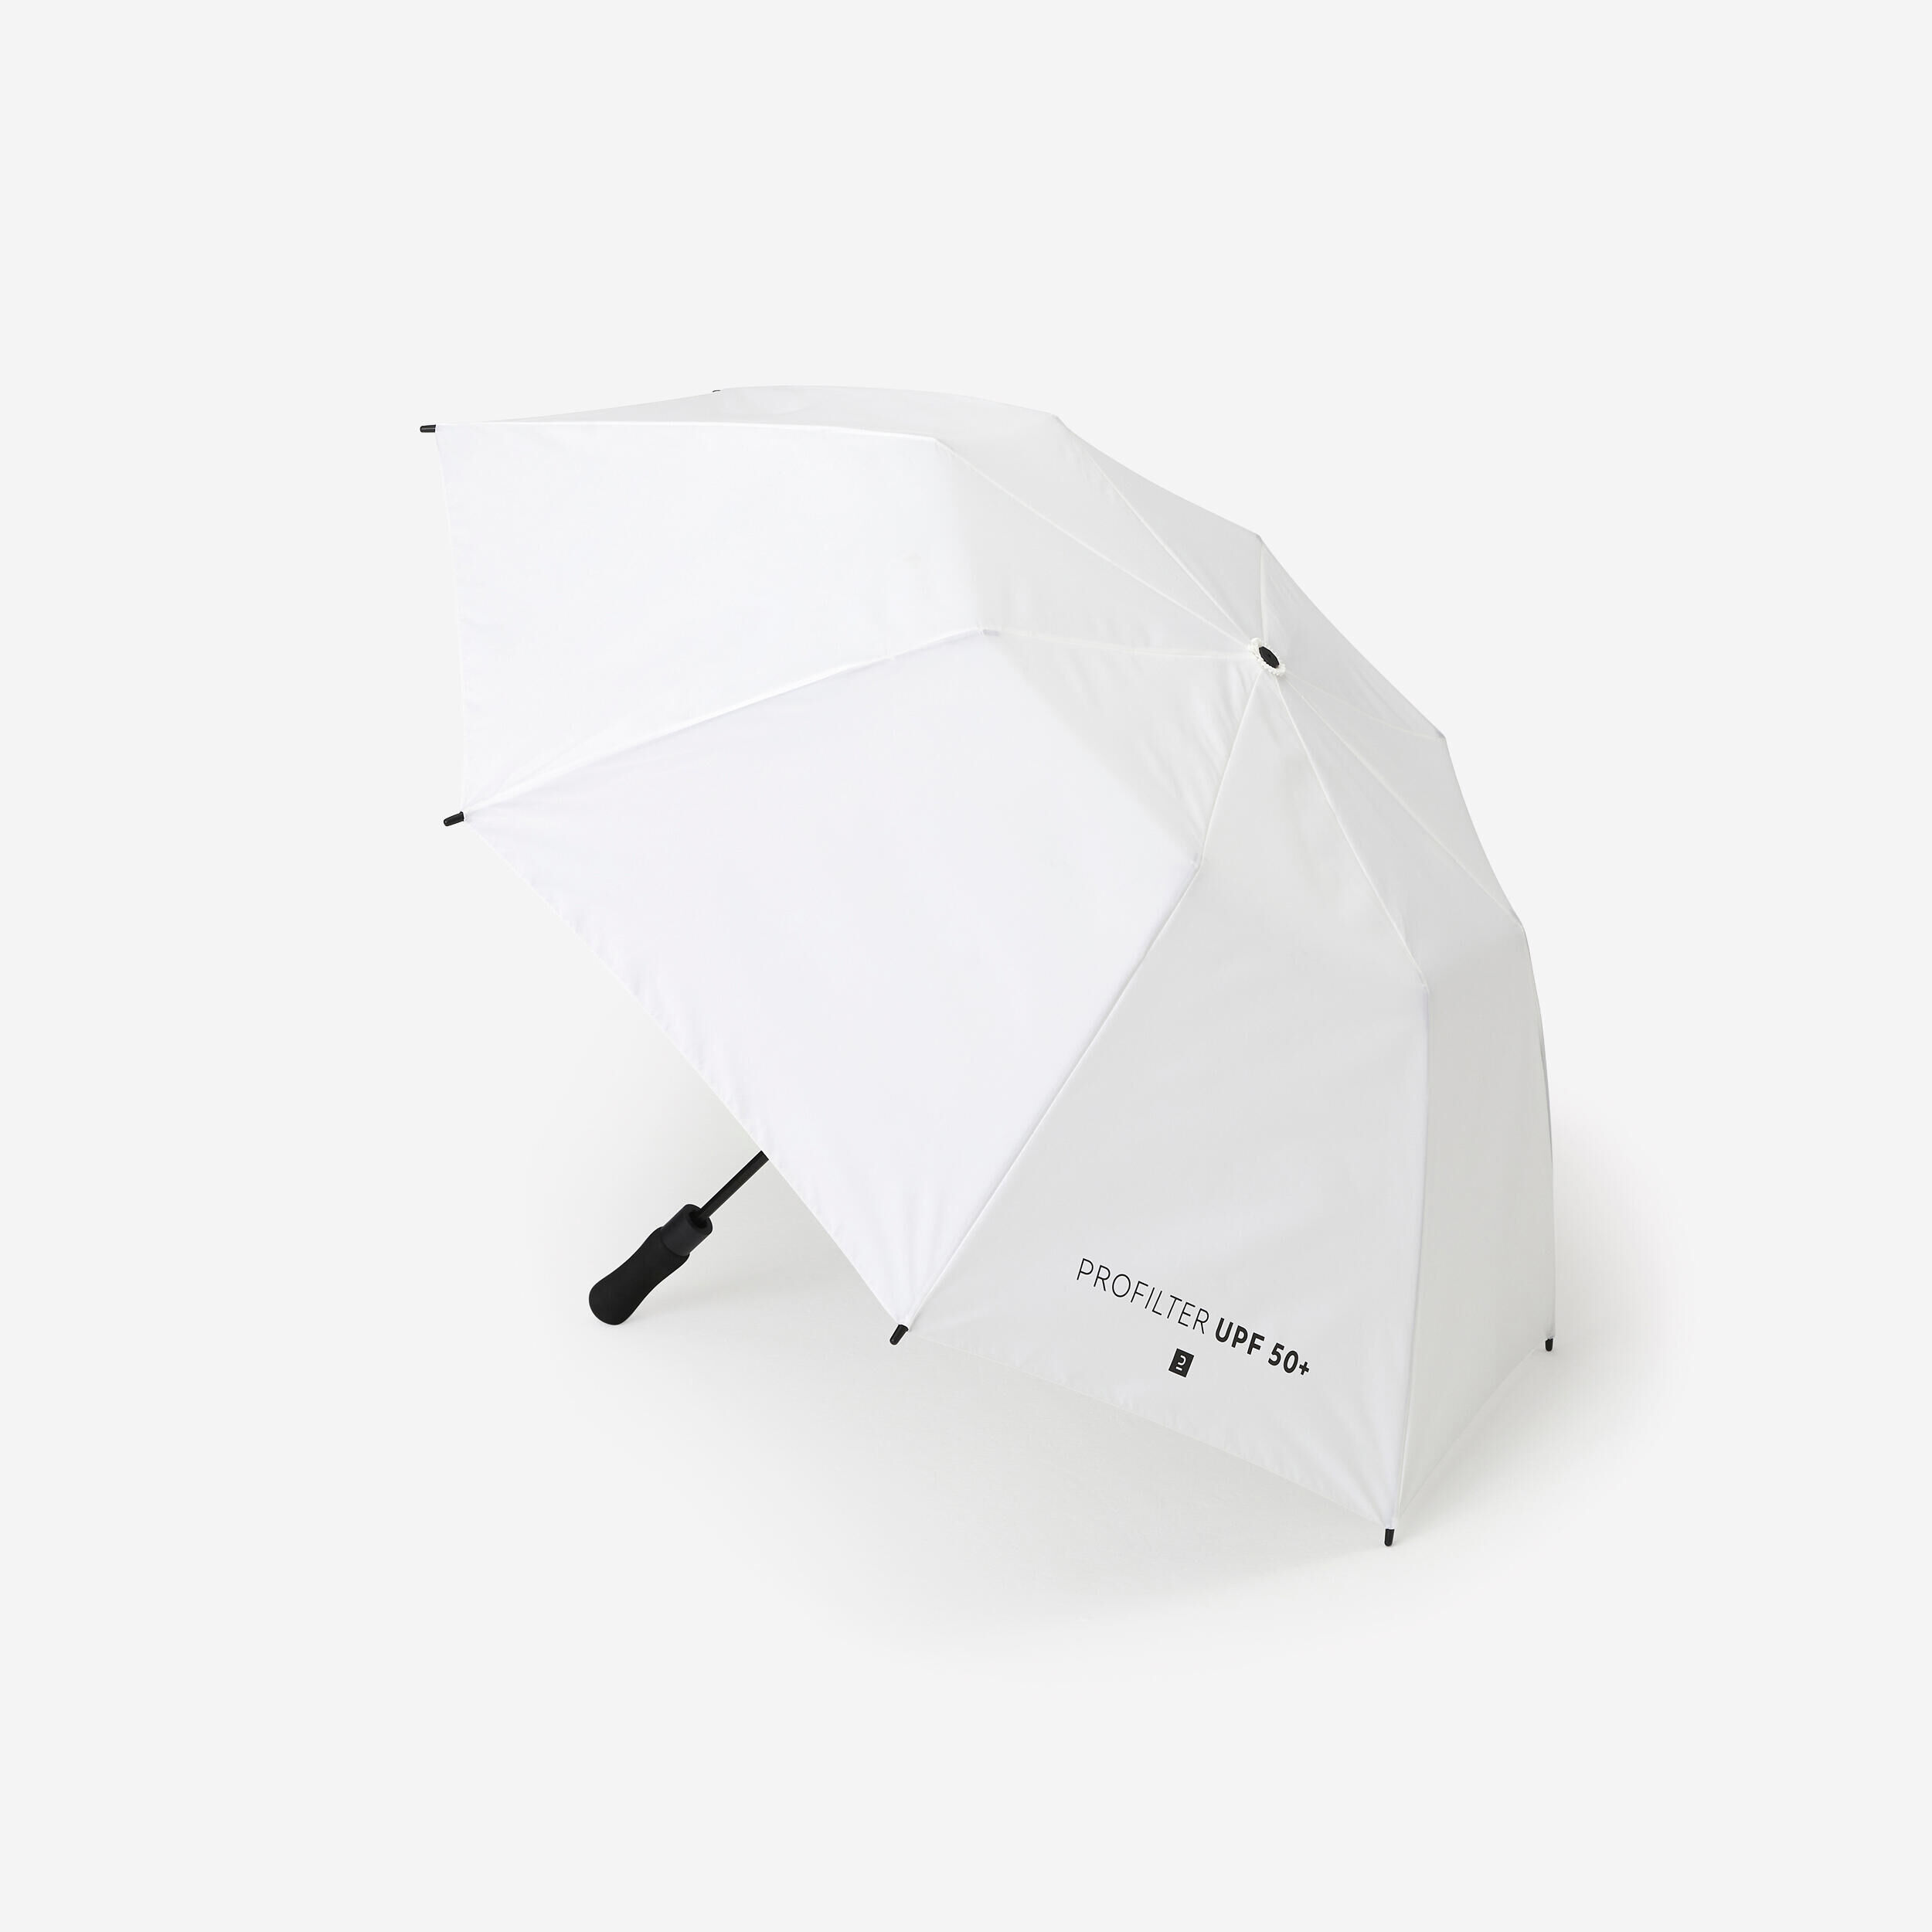 DECATHLON Umbrella small - ProFilter white